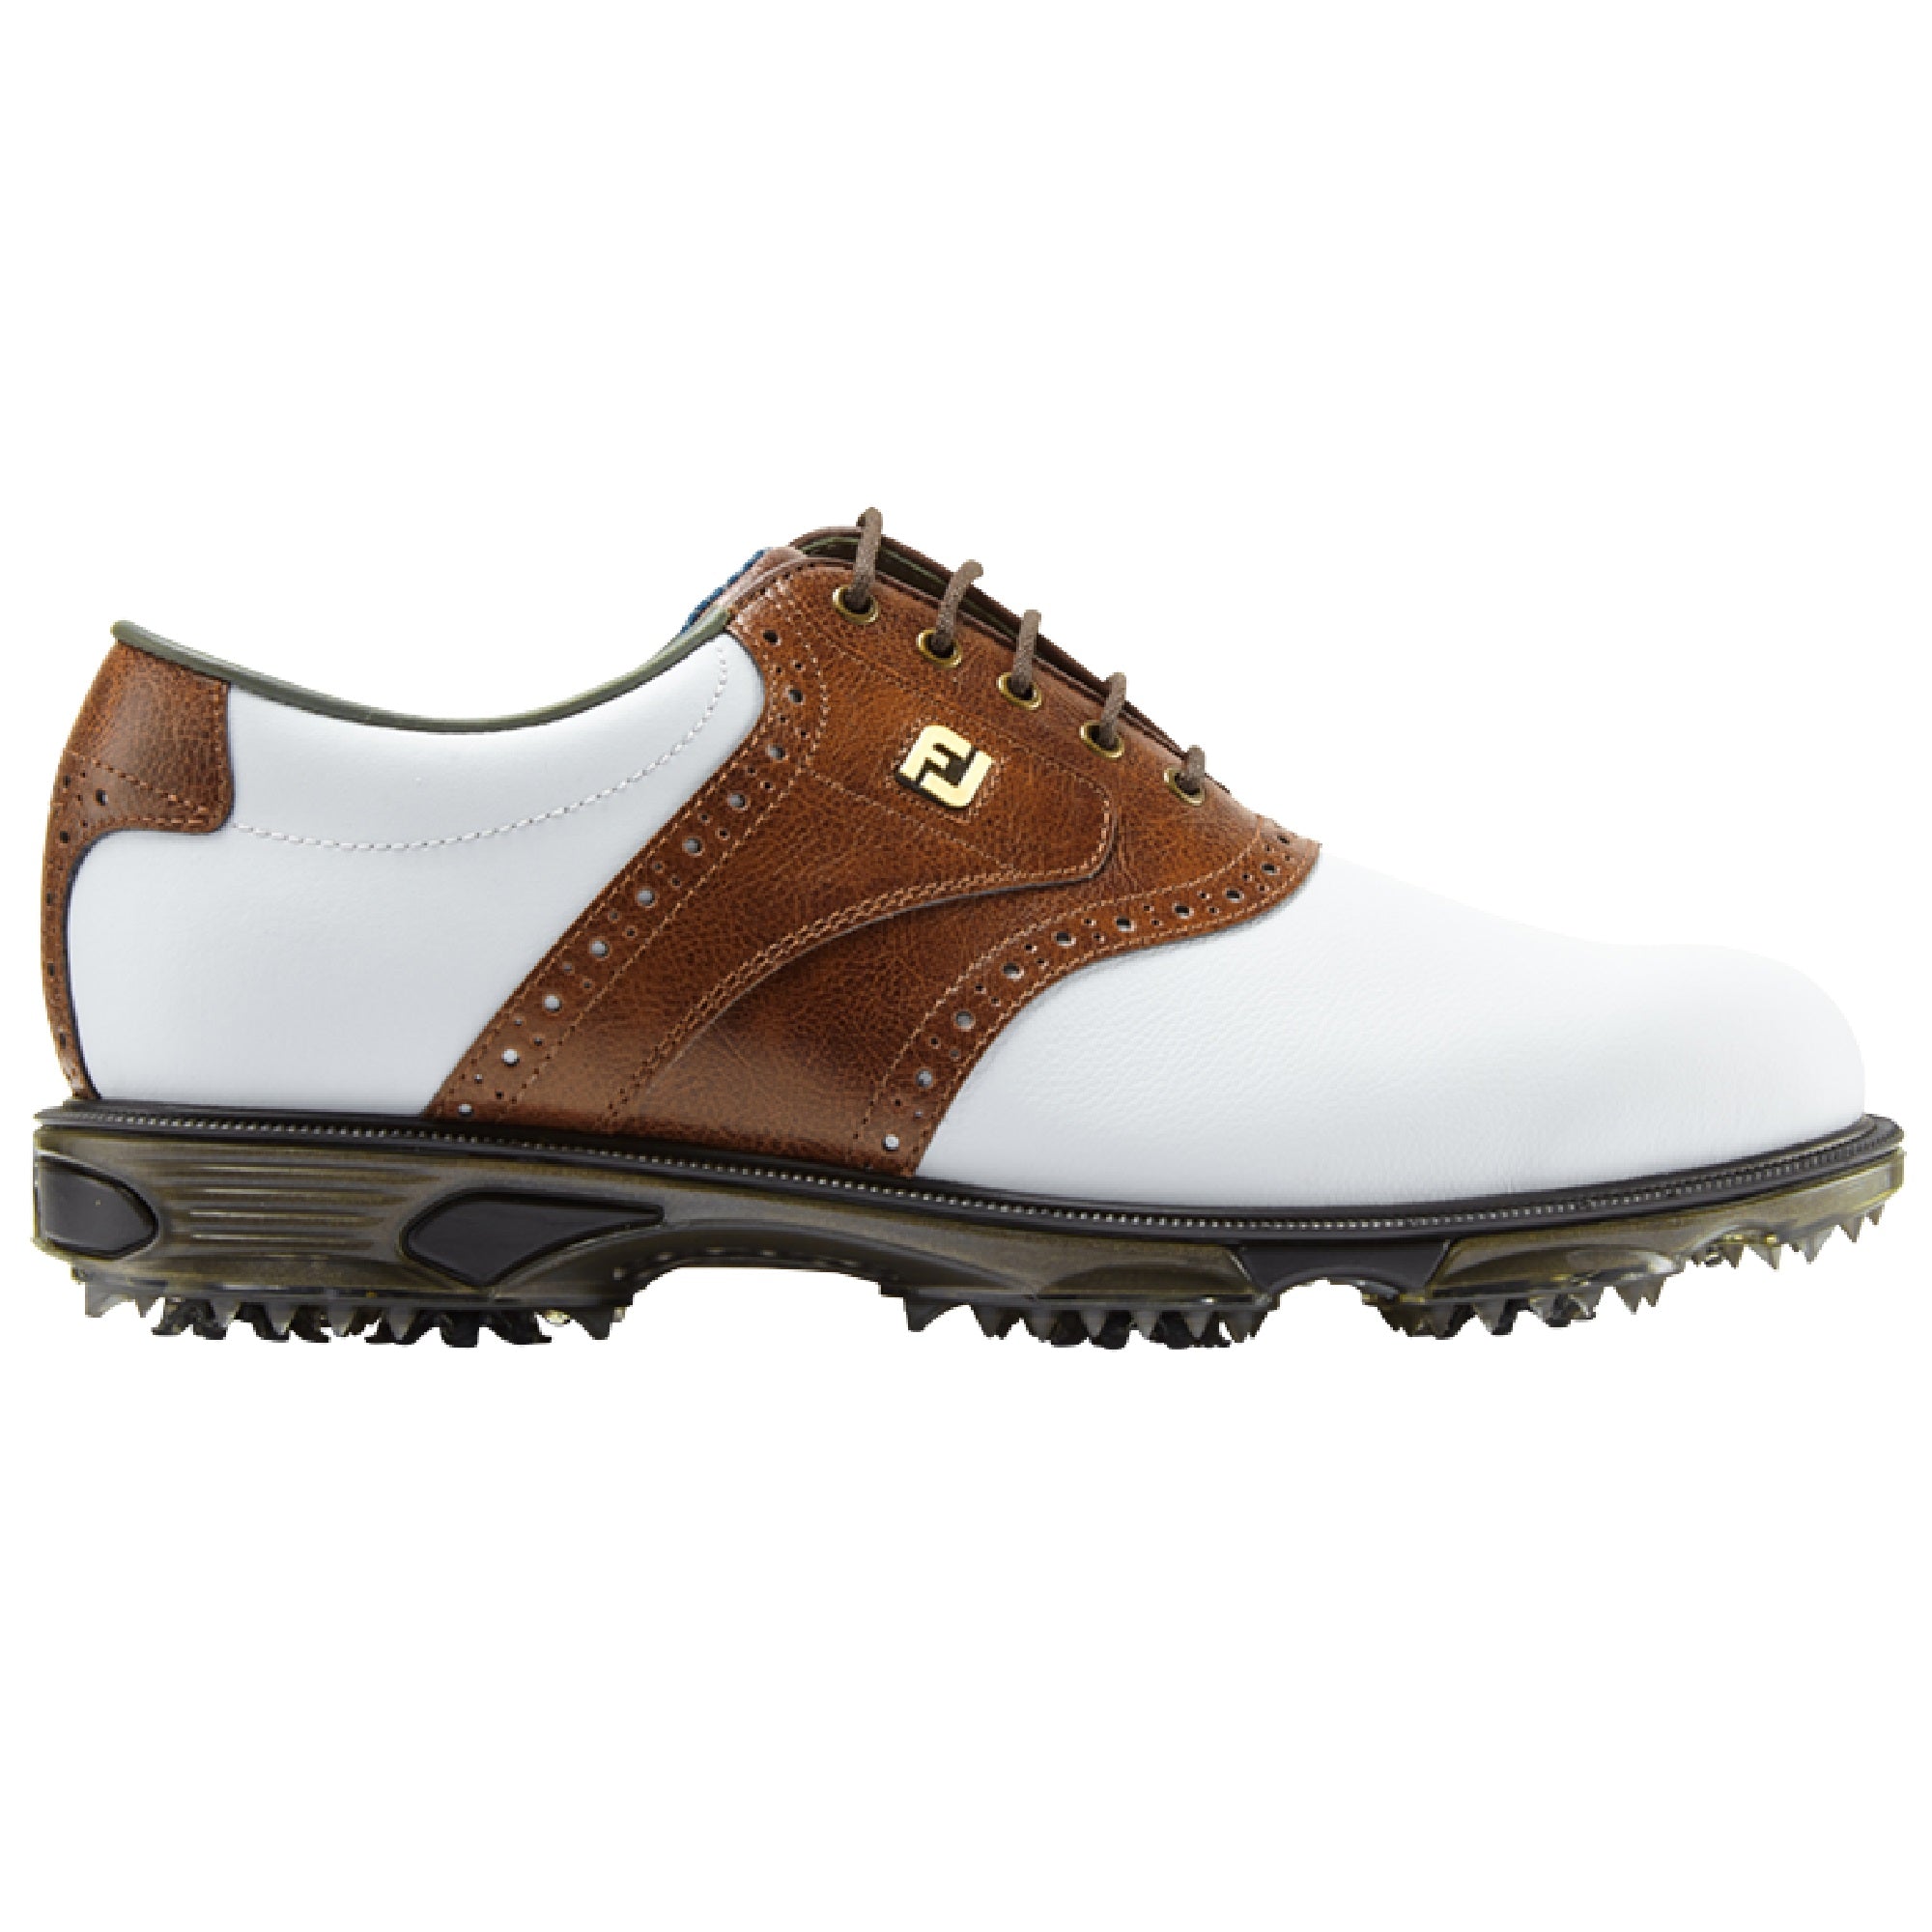 FootJoy DryJoys Tour Golf Shoes 53709 White Brown | Function18